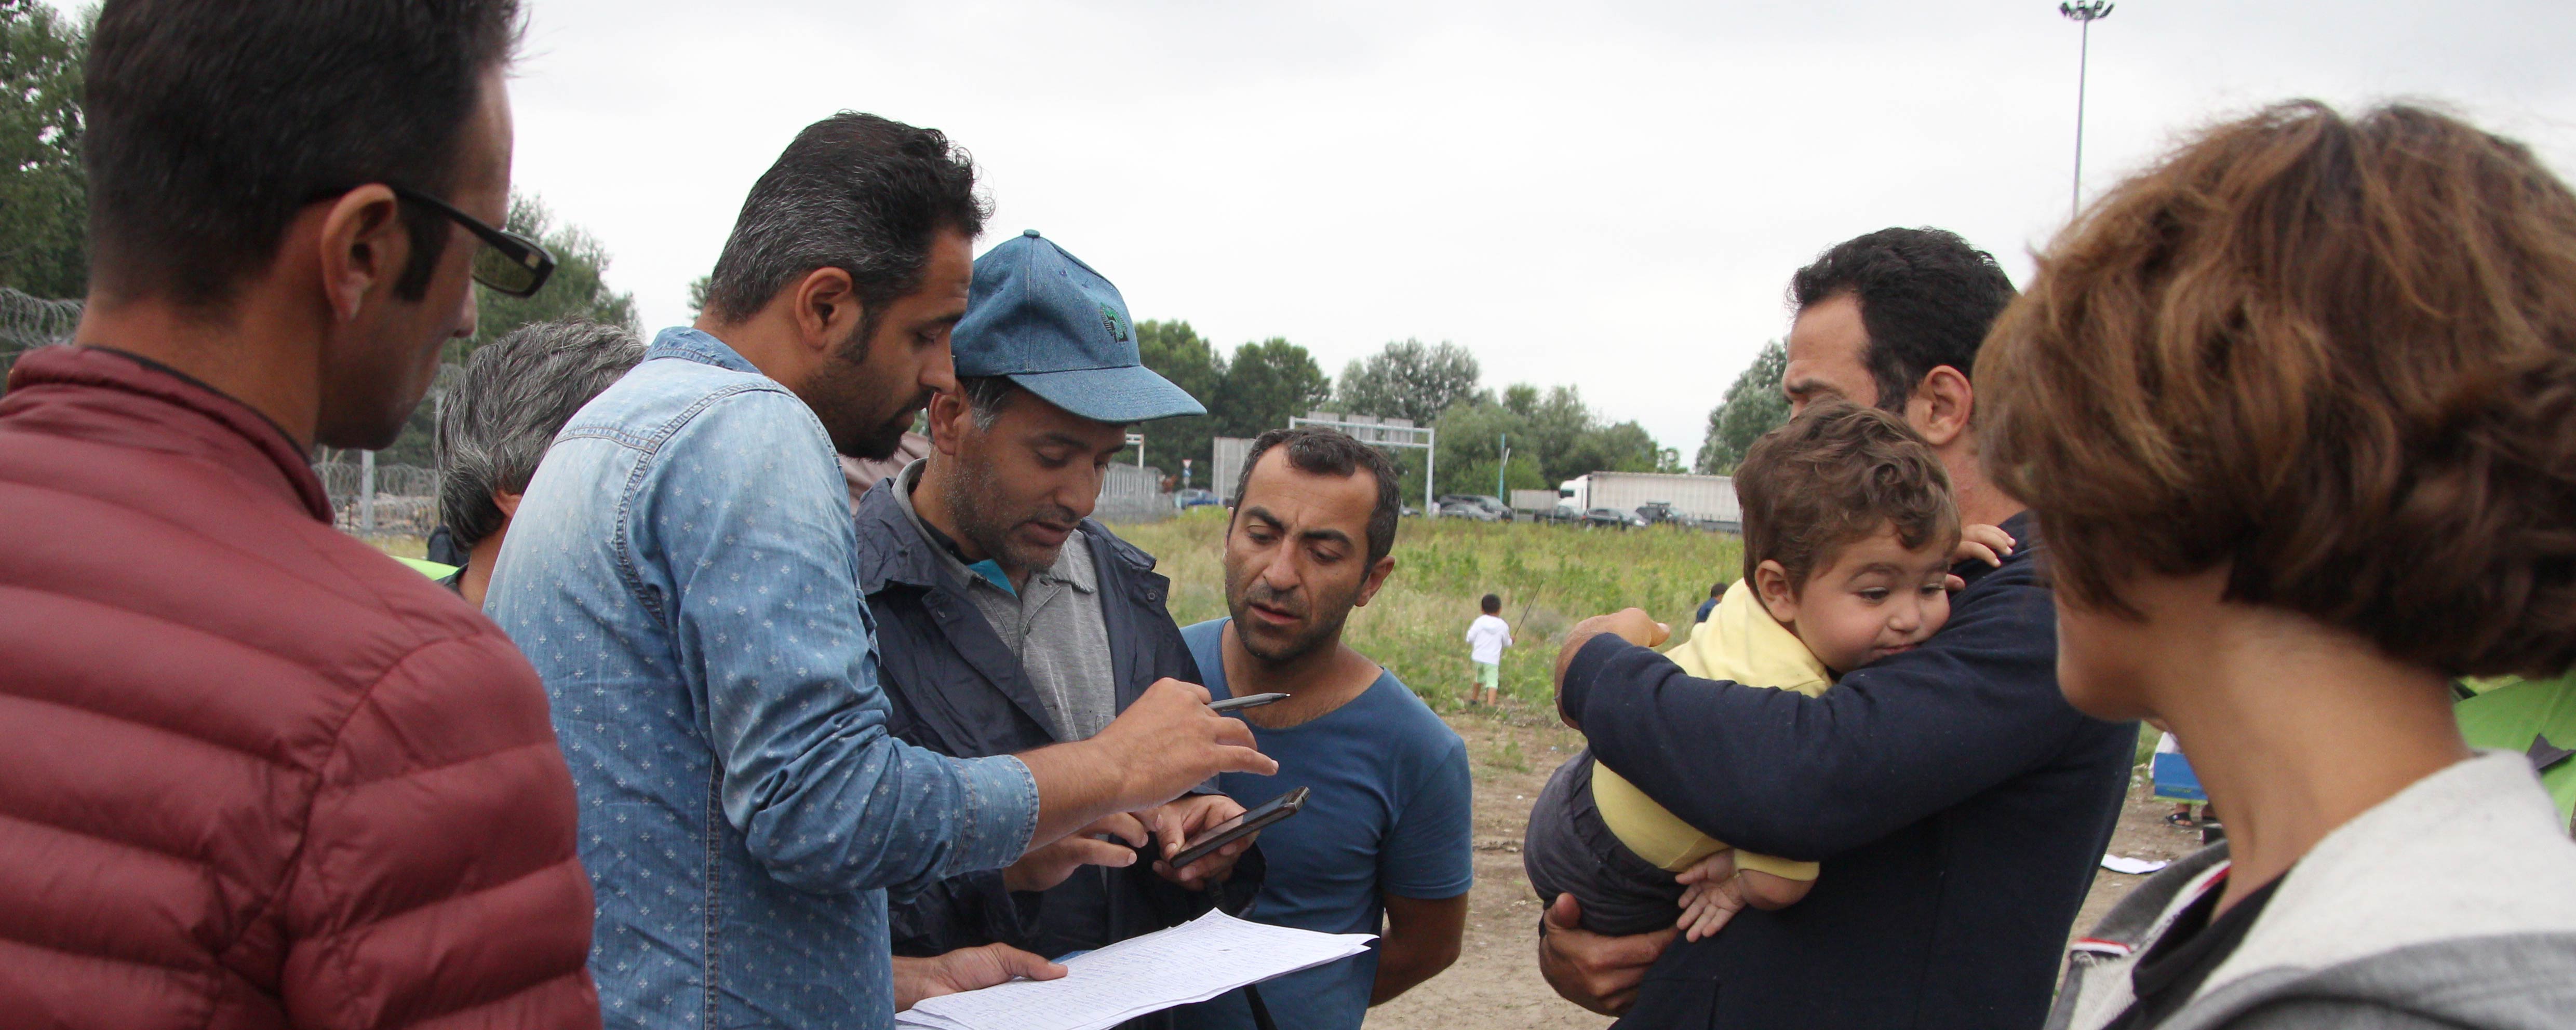 Kockázatos szökés és hosszú utazás után egy menekült család biztonságra talál